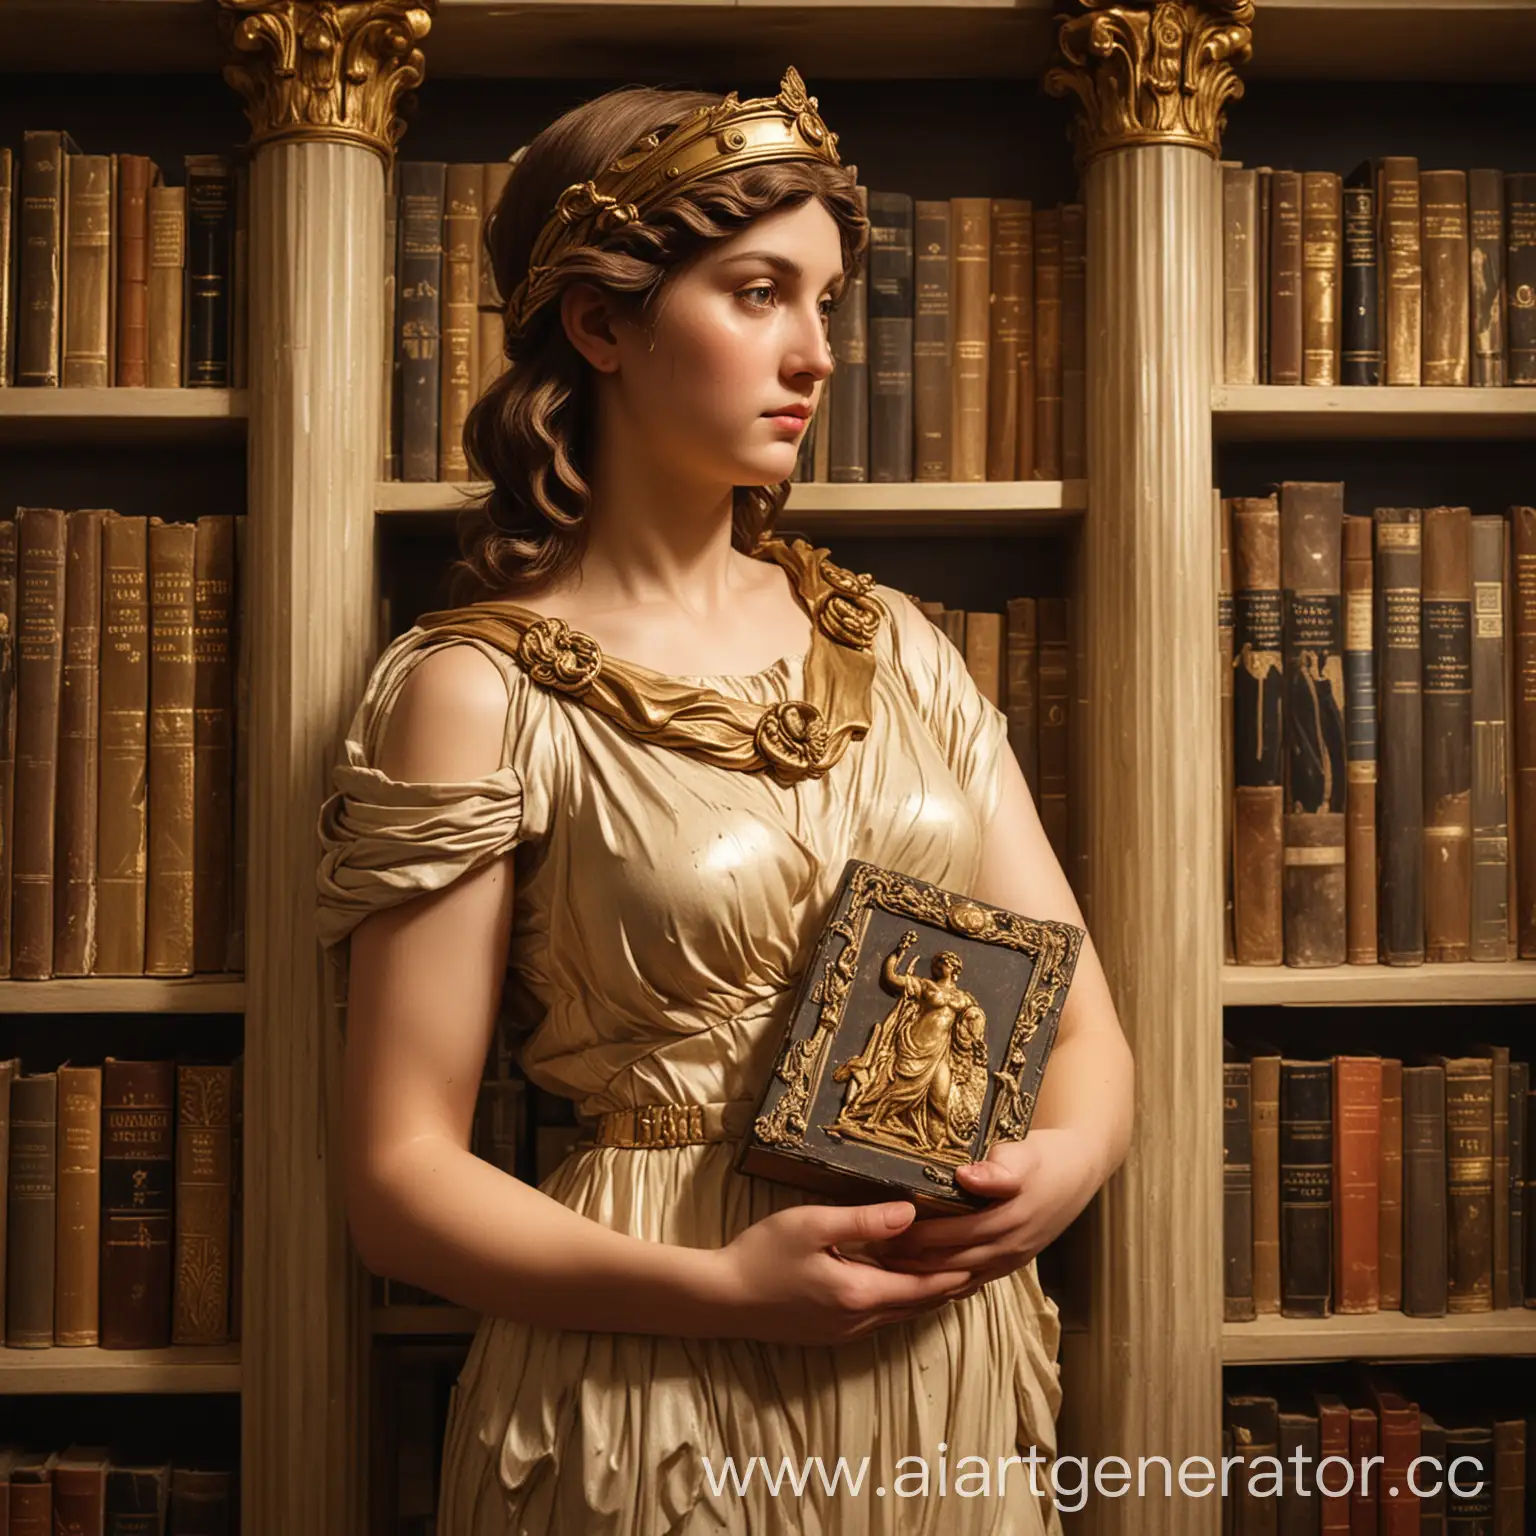 Афина с книгой в руках на фоне книжных шкафов в освещенном зале. Немного золота и золотое пано